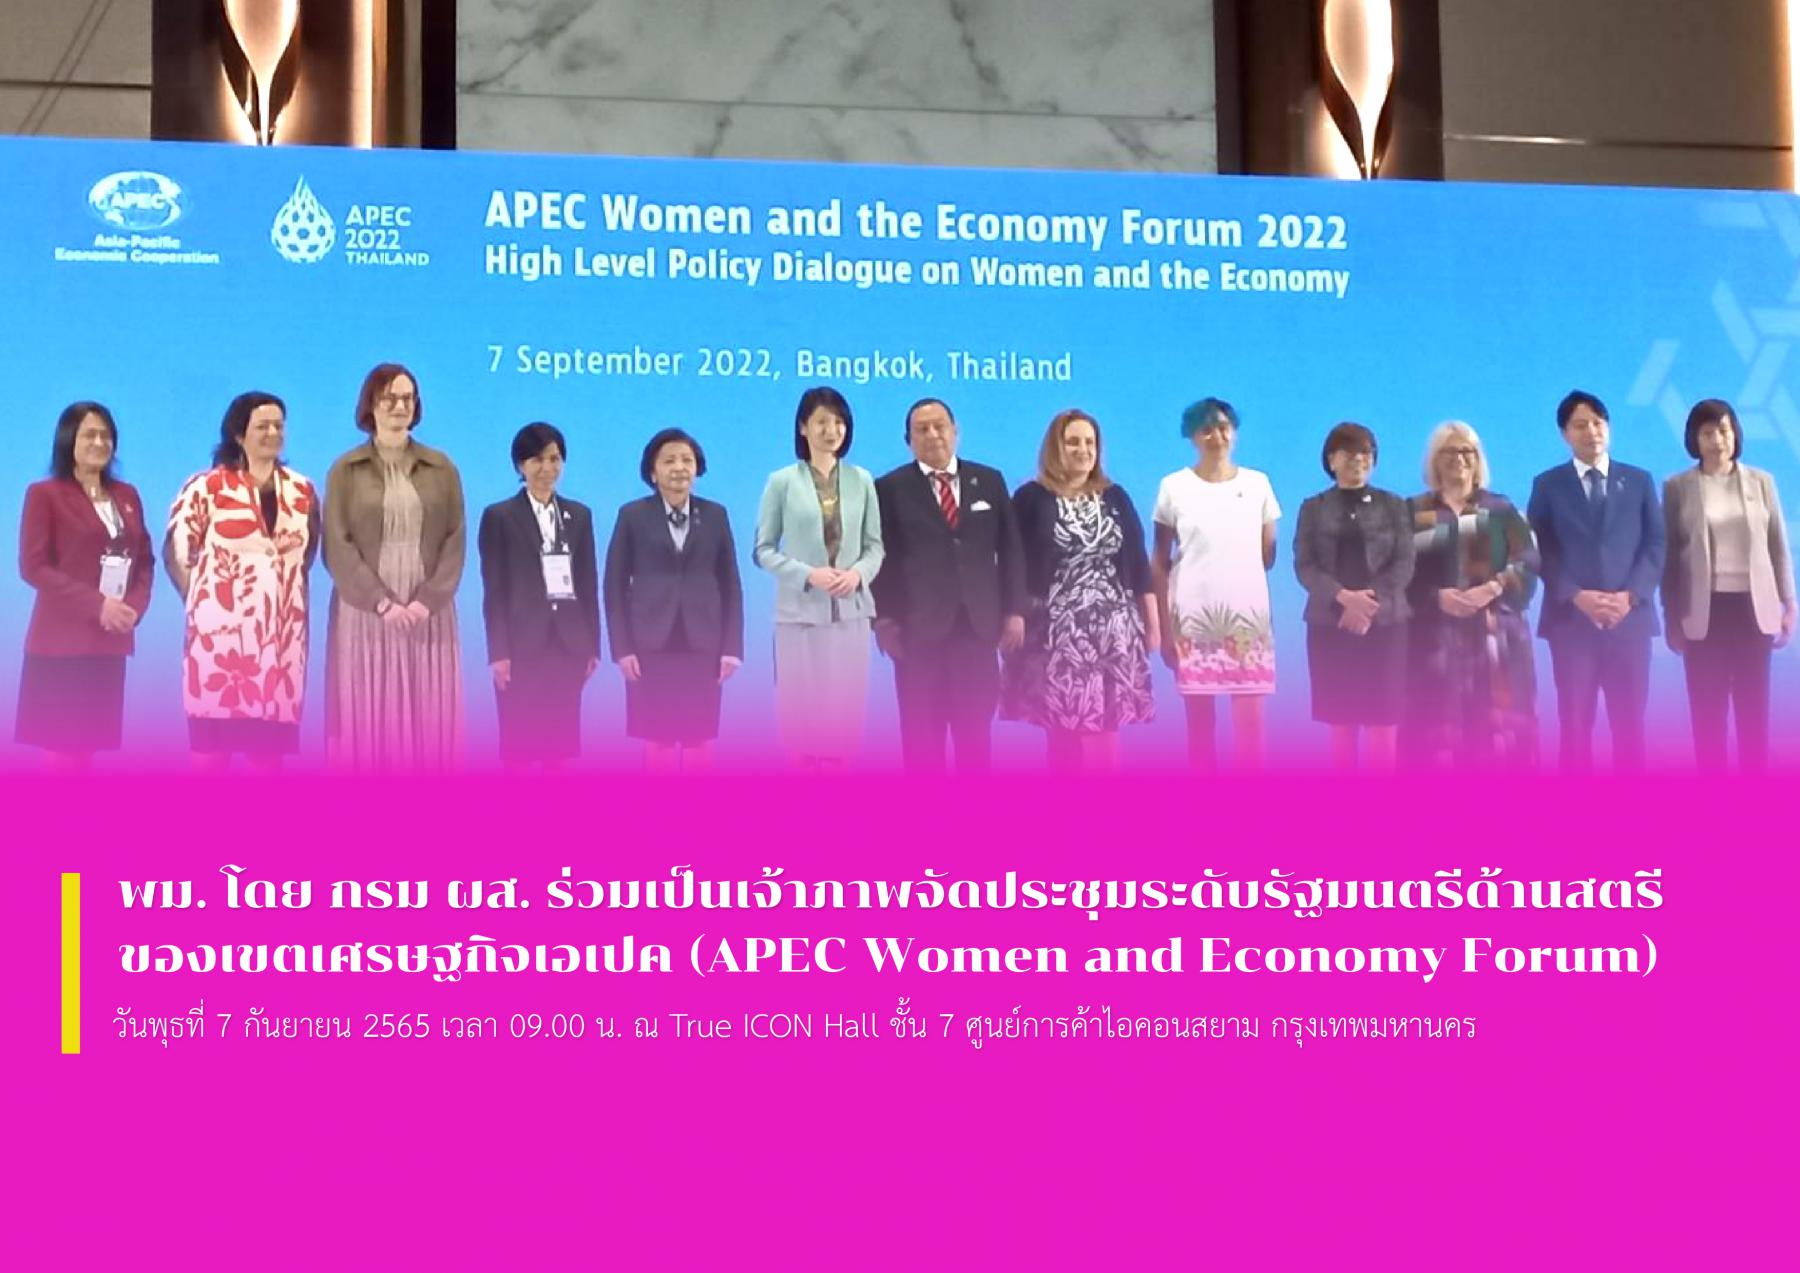 พม. โดย กรม ผส. ร่วมเป็นเจ้าภาพจัดประชุมระดับรัฐมนตรีด้านสตรีของเขตเศรษฐกิจเอเปค (APEC Women and Economy Forum)